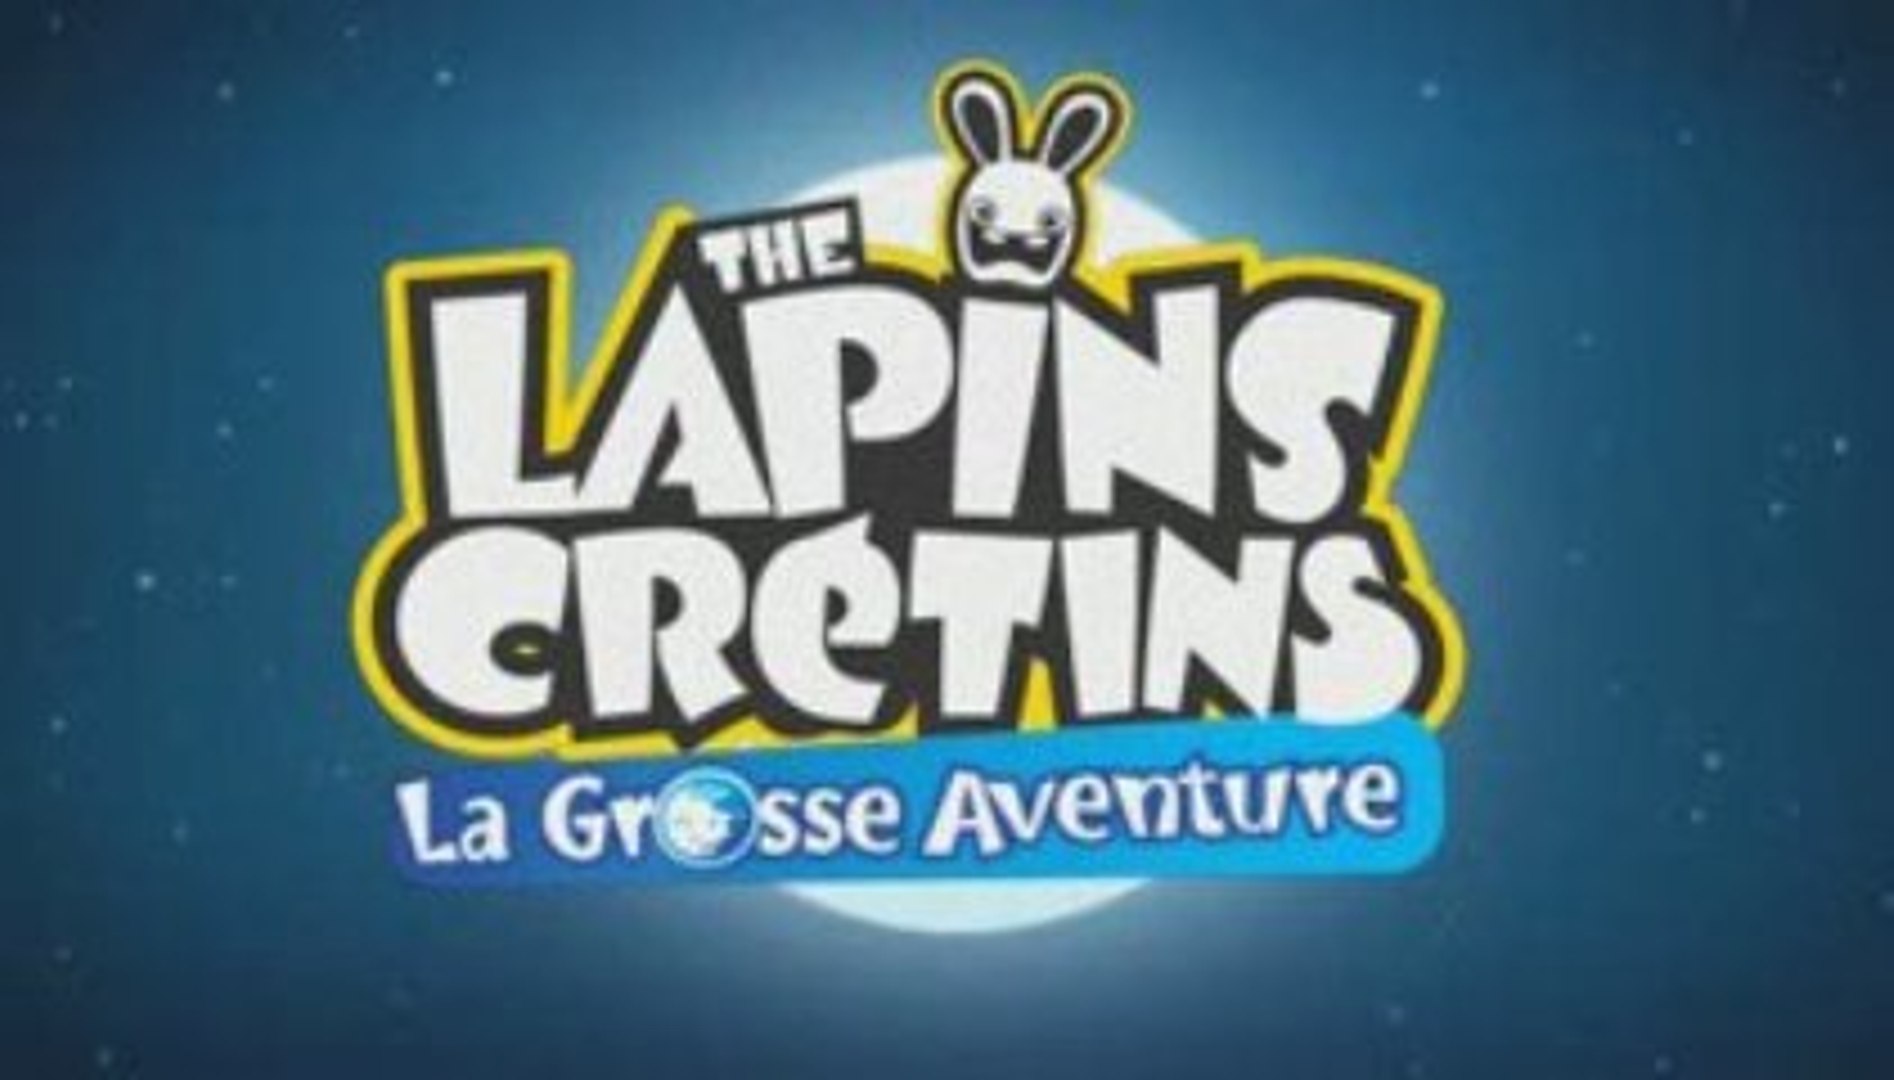 Lapins crétins- La Grosse aventure 100% FR - Vidéo Dailymotion